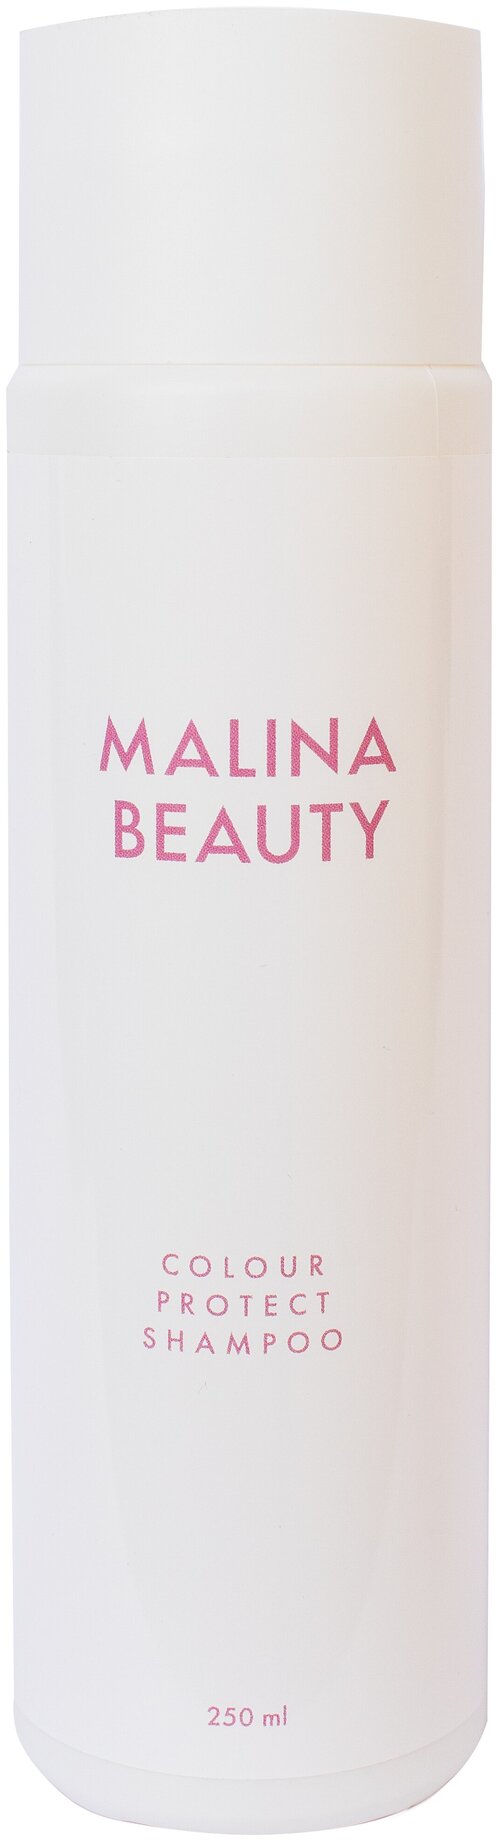 Профессиональный шампунь для окрашенных волос MALINA BEAUTY, 250 мл